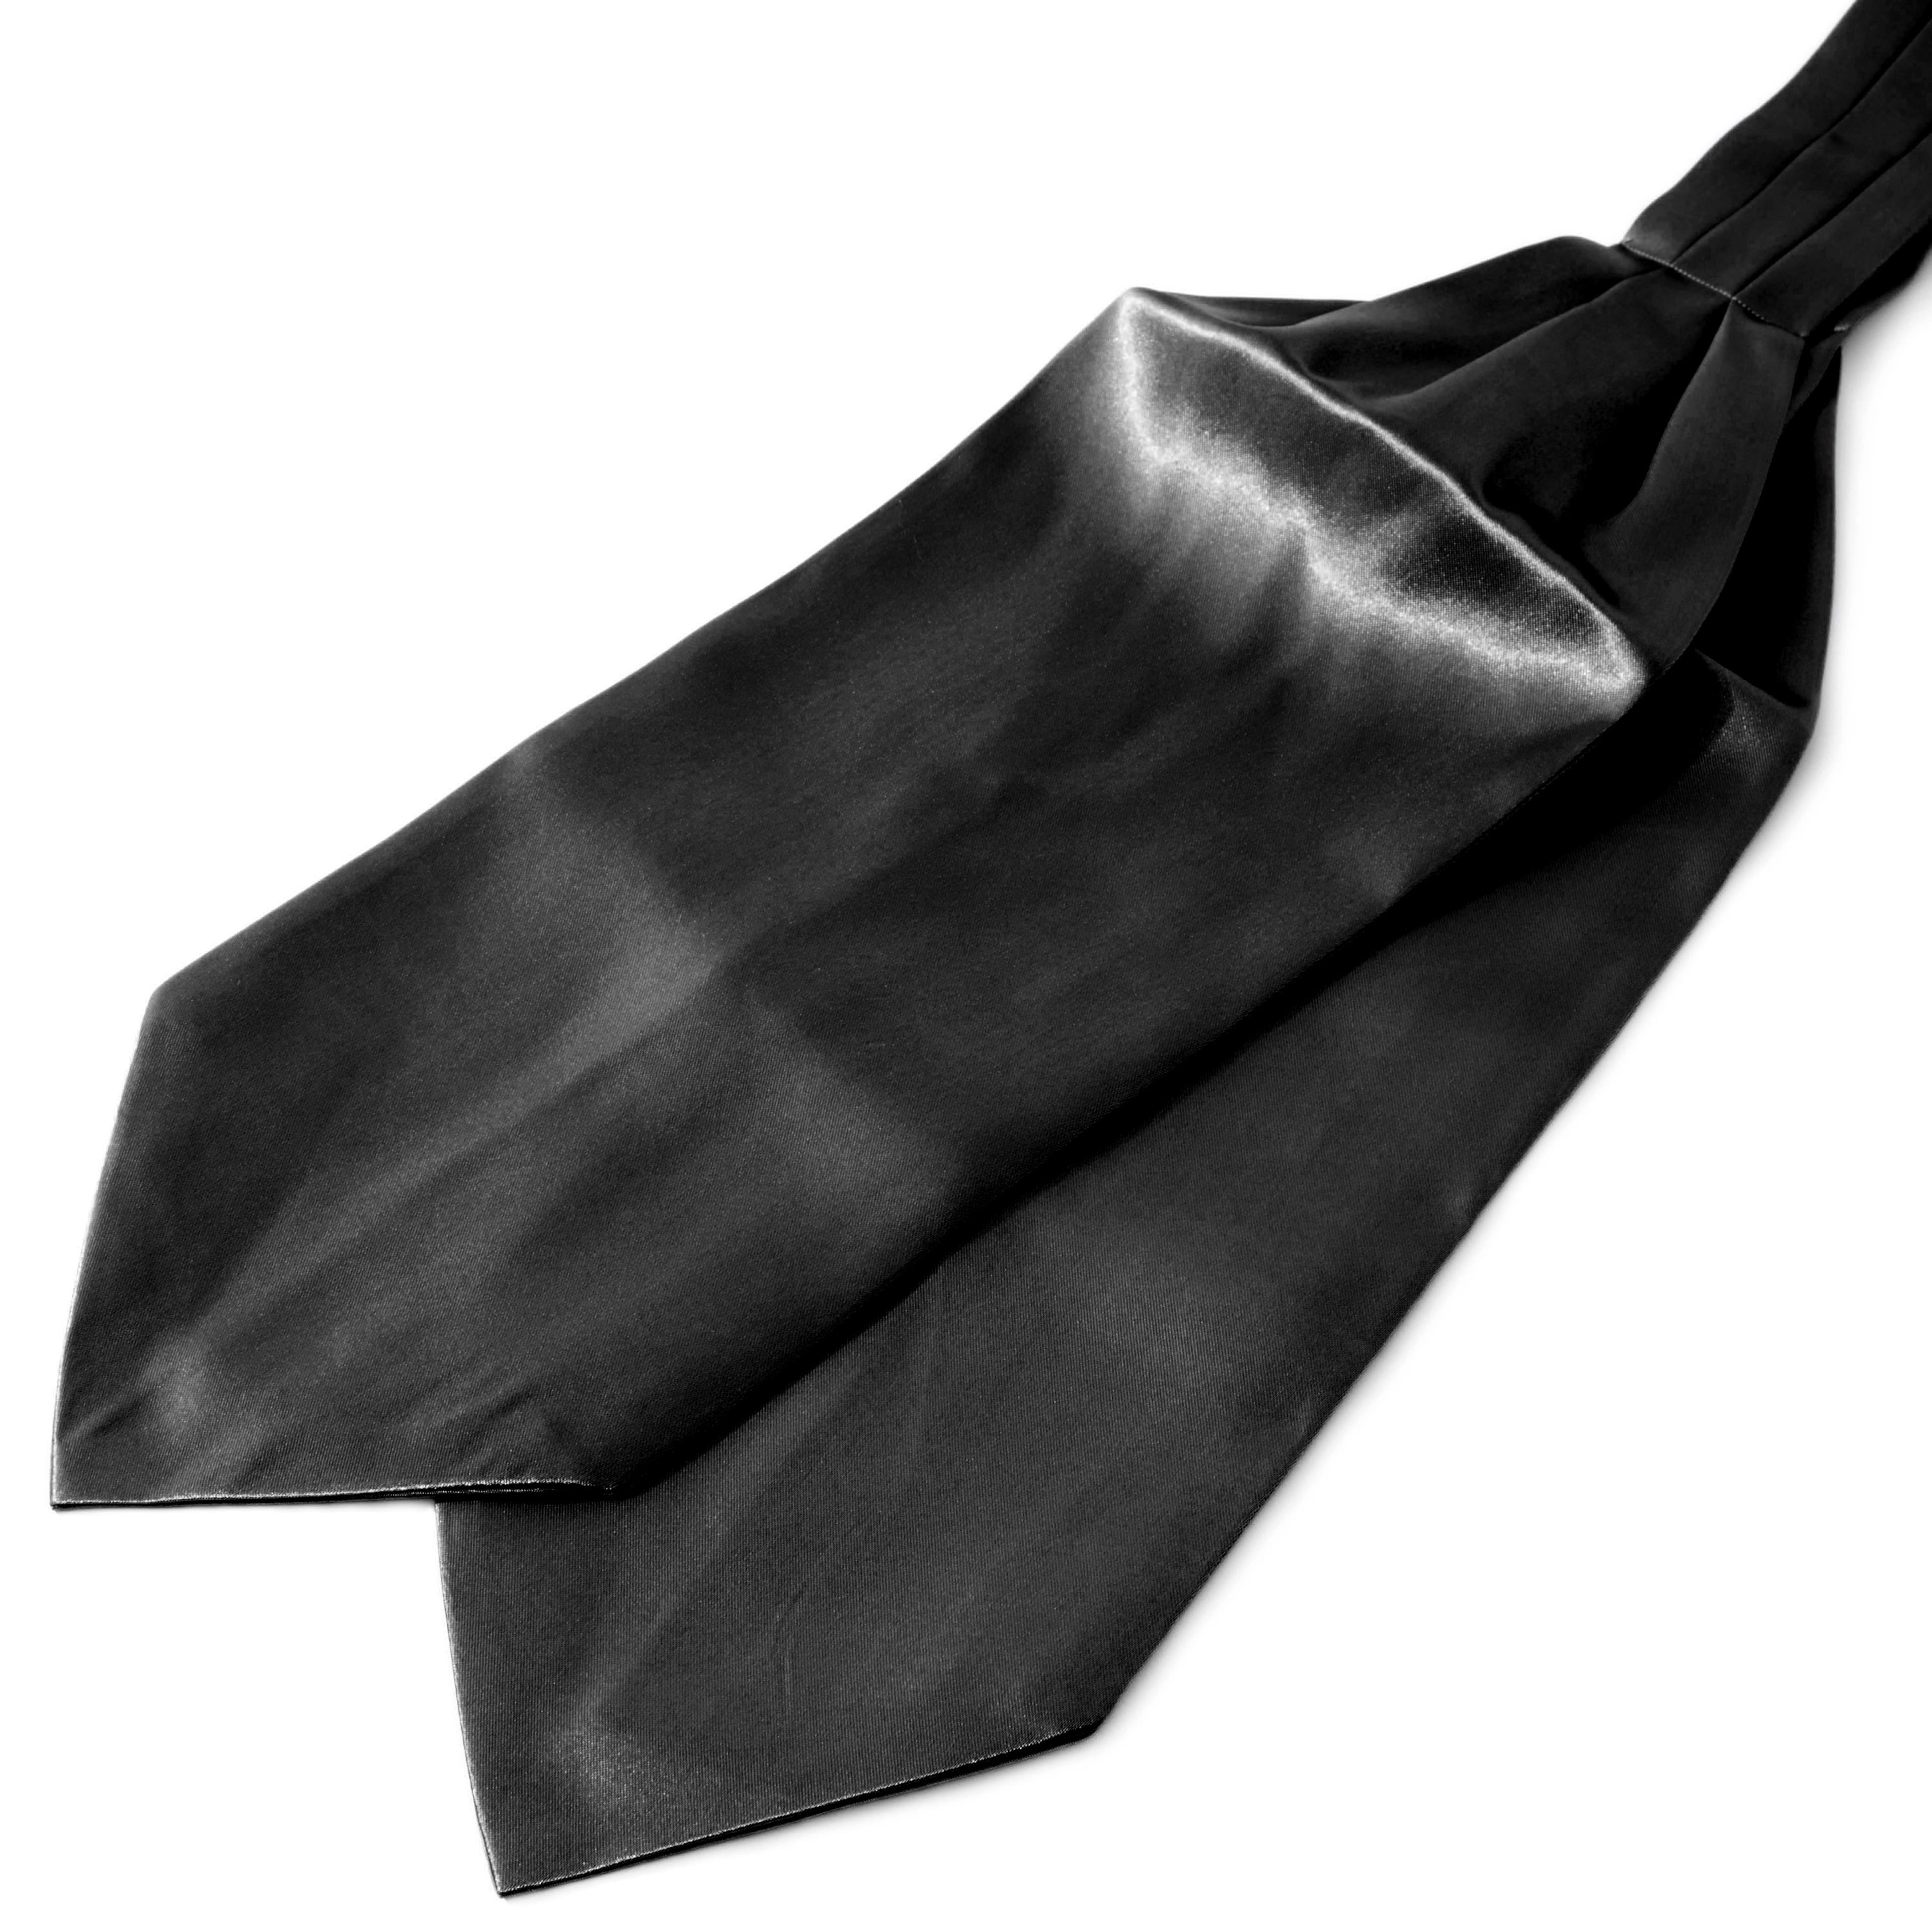 Cravate unie noir brillant